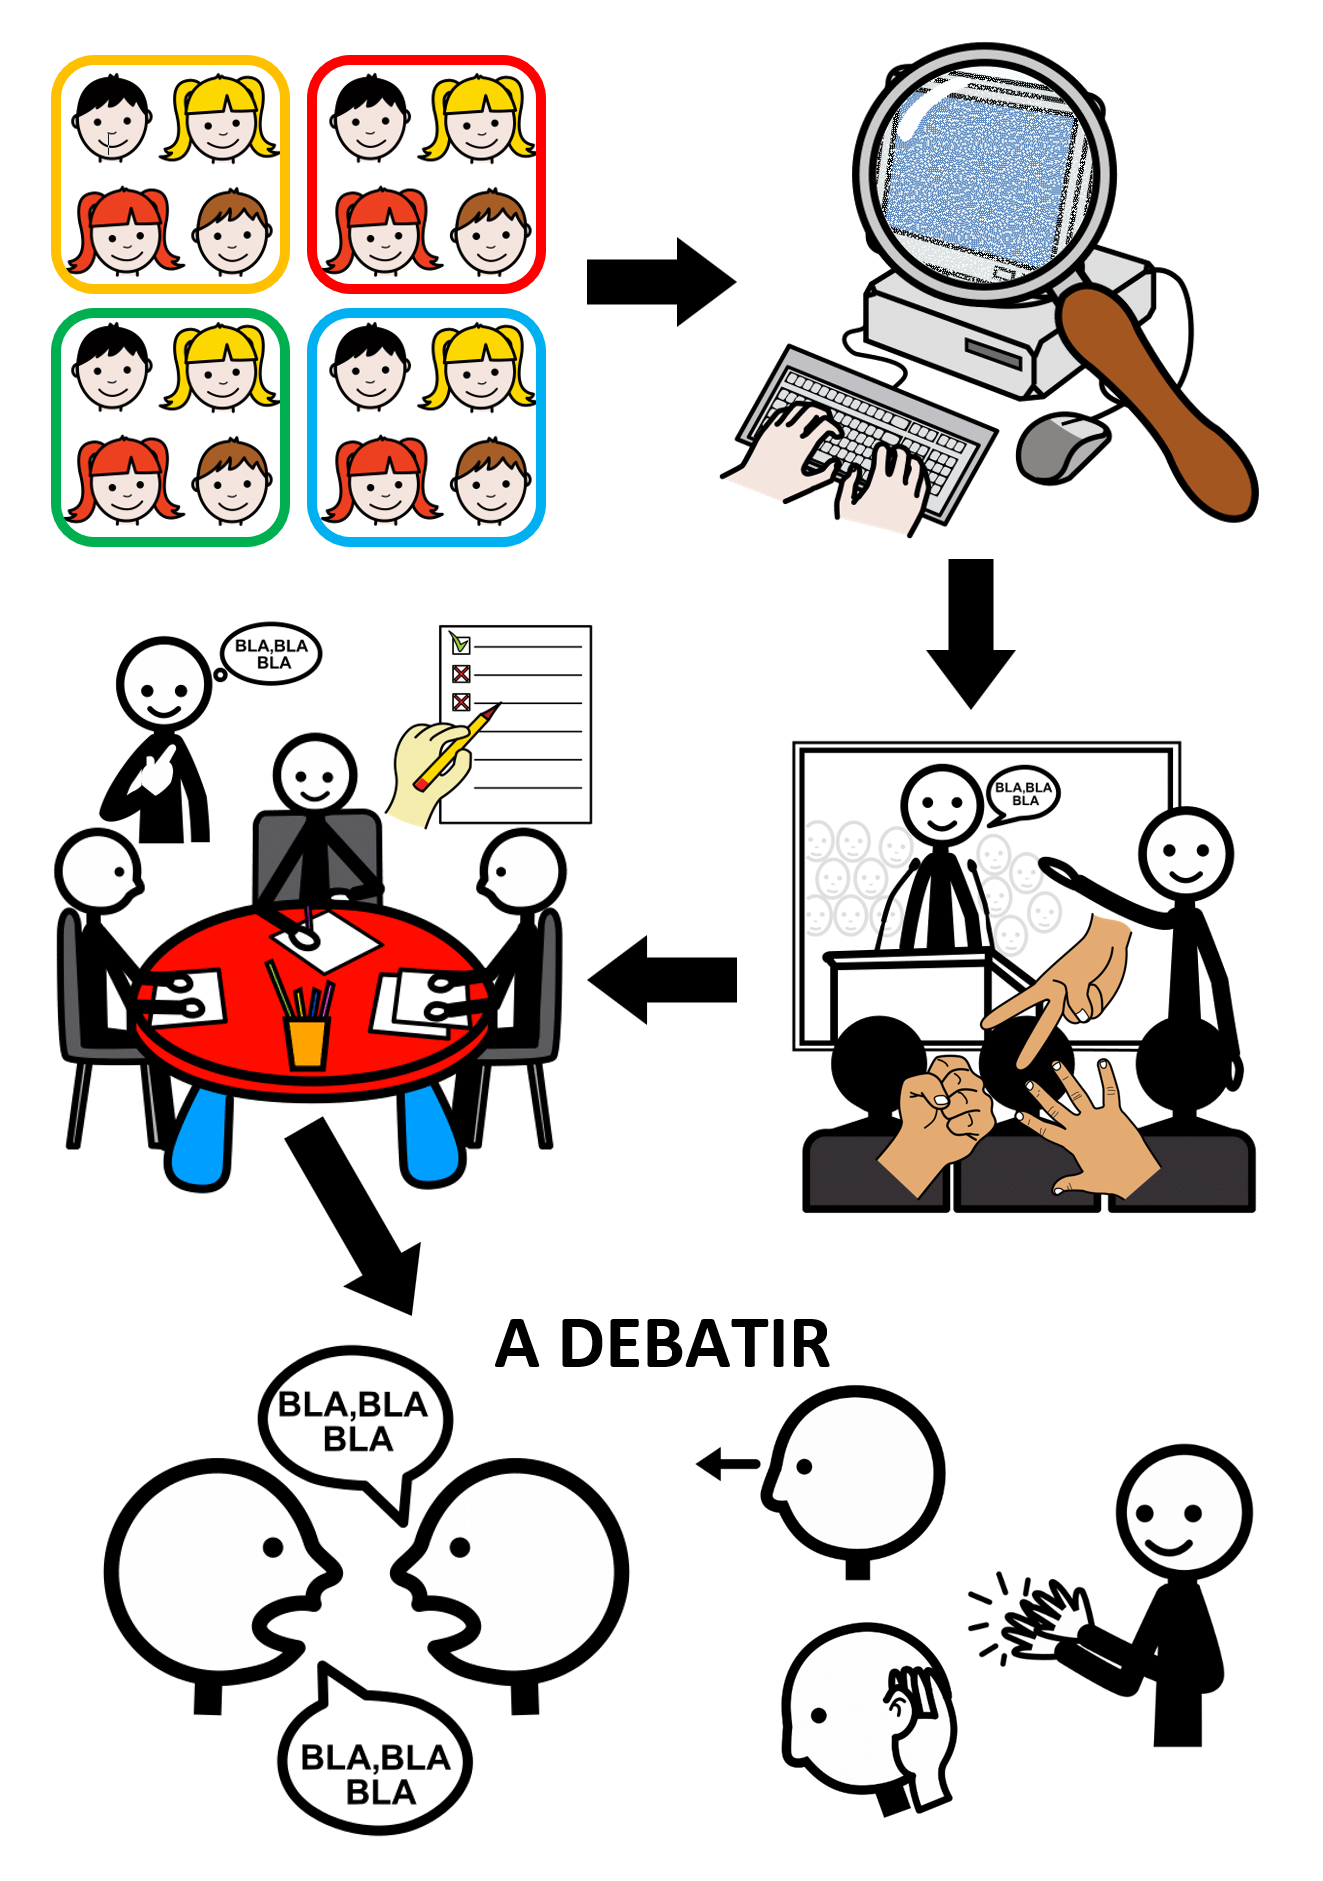  La imagen muestra los pasos para el debate secuenciados mediante flechas.